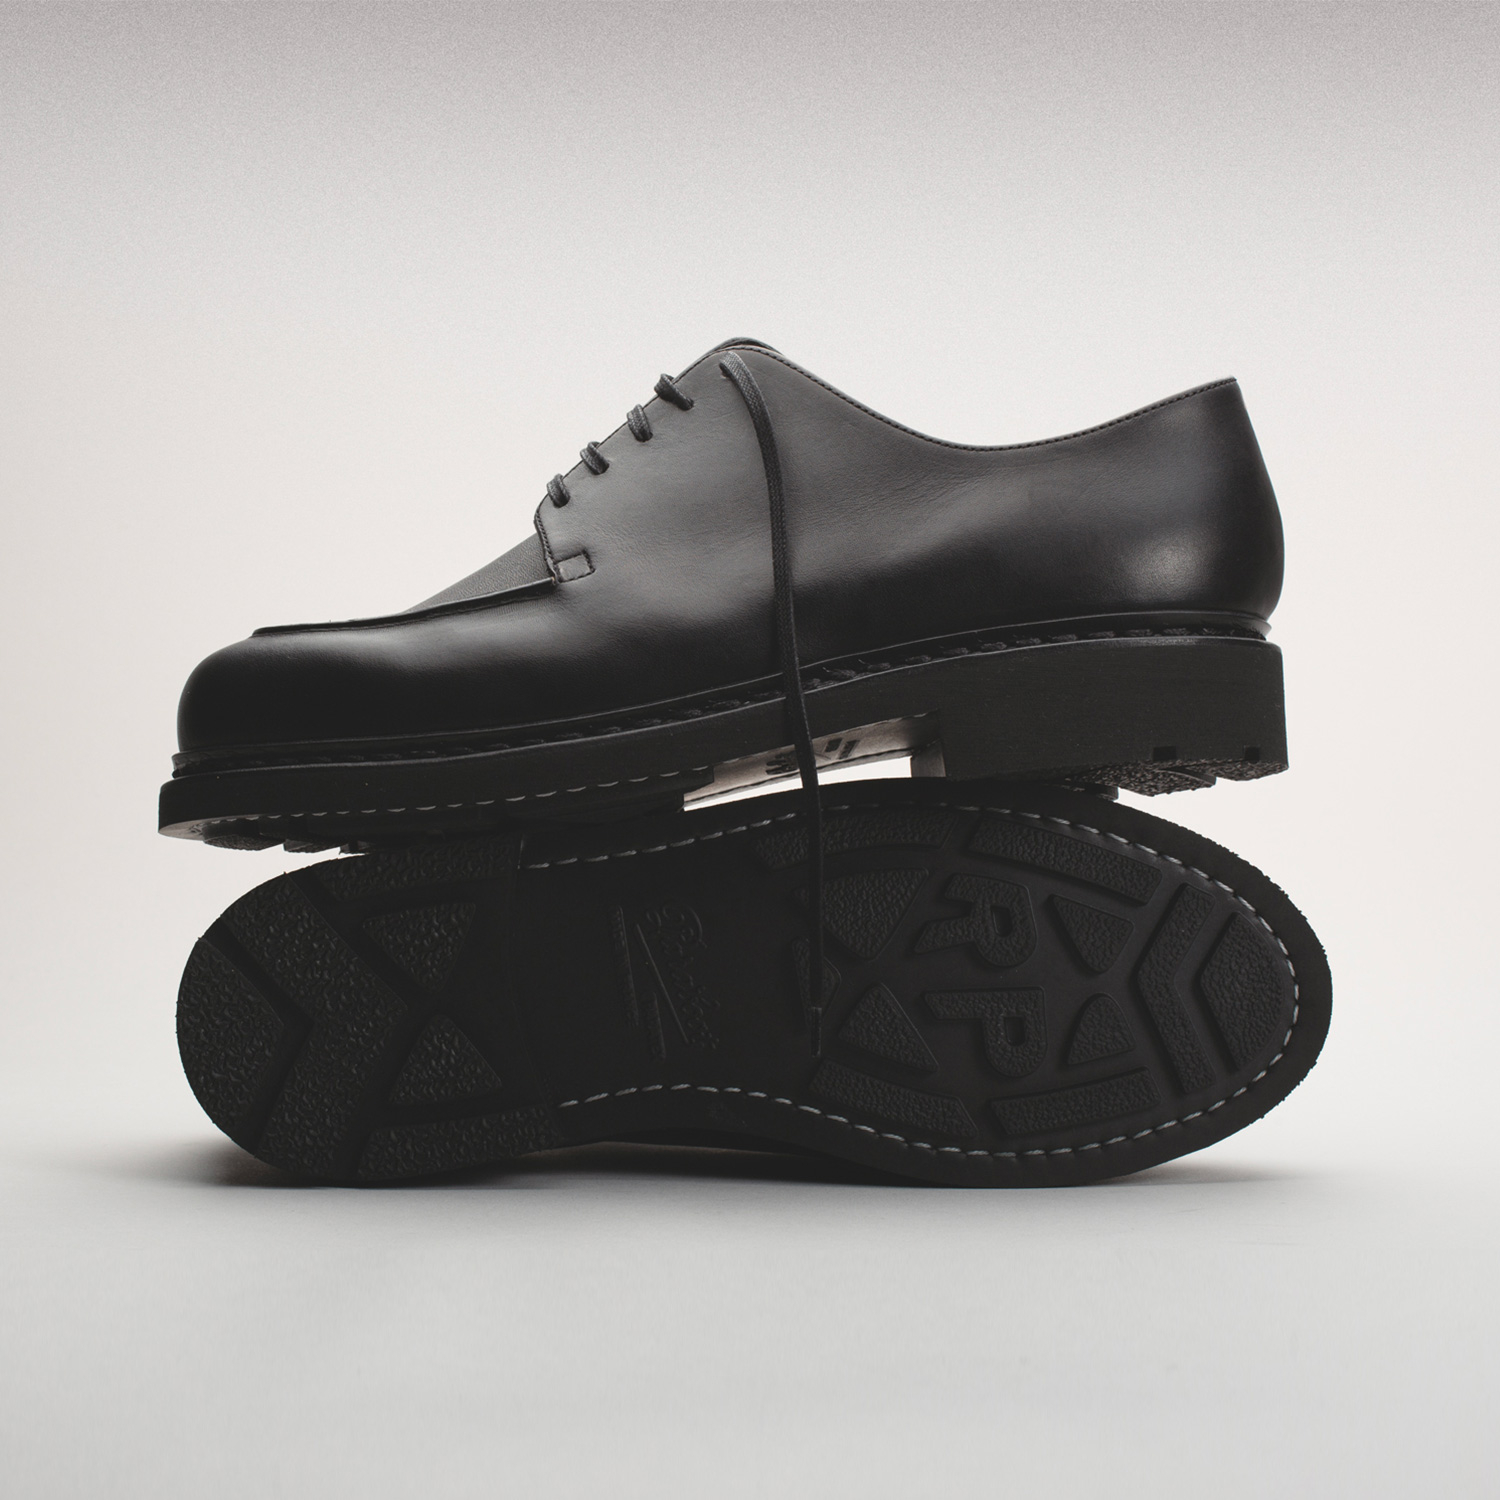 Chaussures MIRAGE coloris Noir par Arpenteur